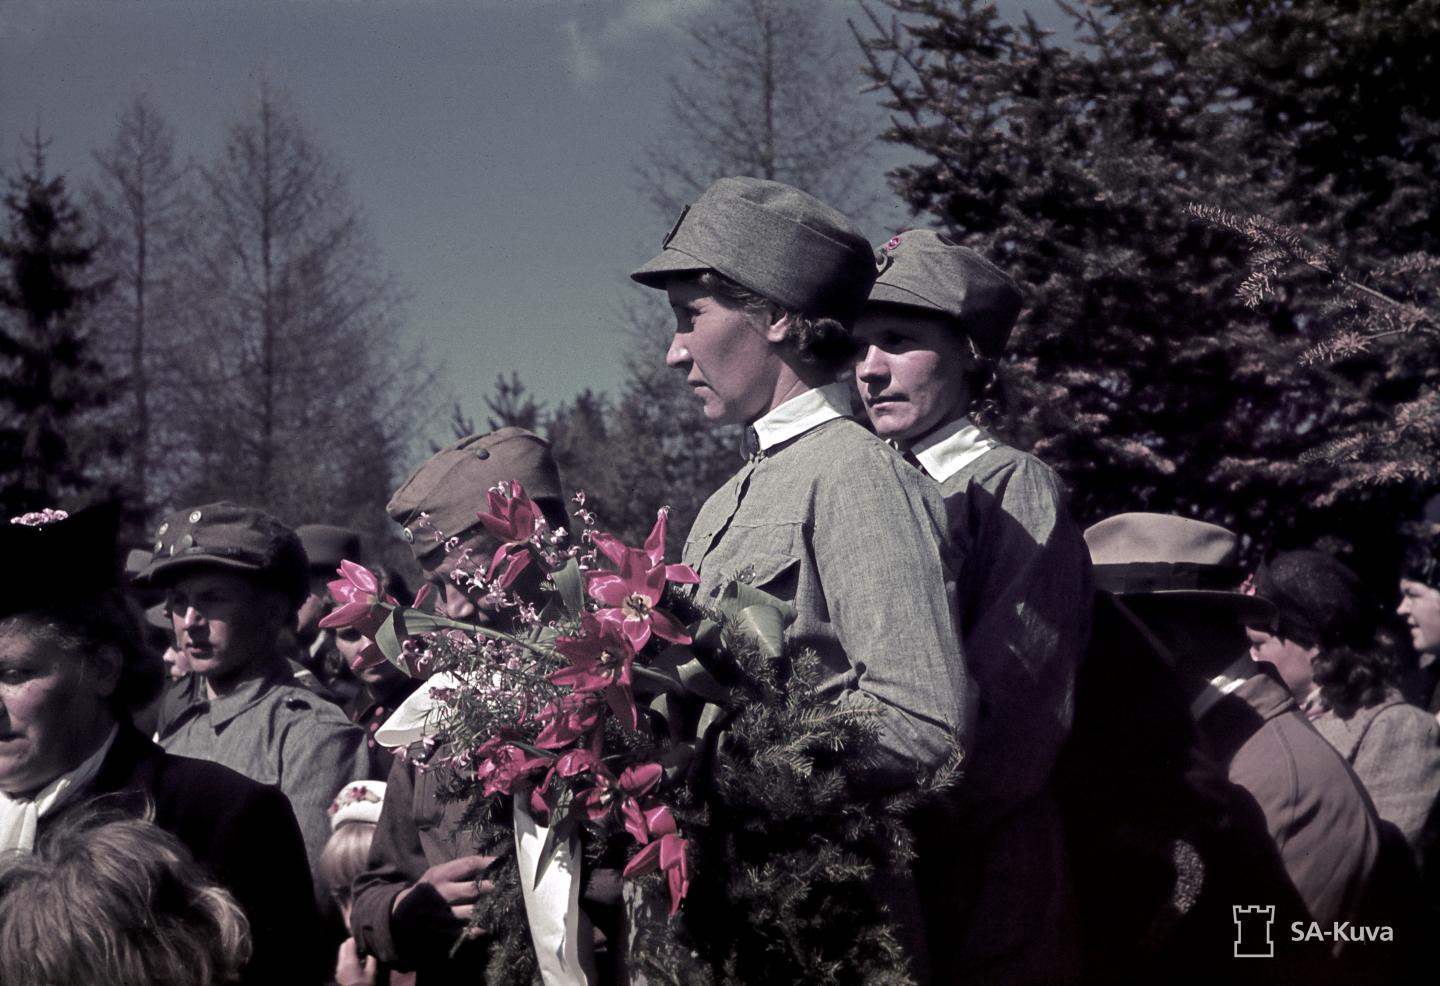 Lotta Svärd Women in 1940